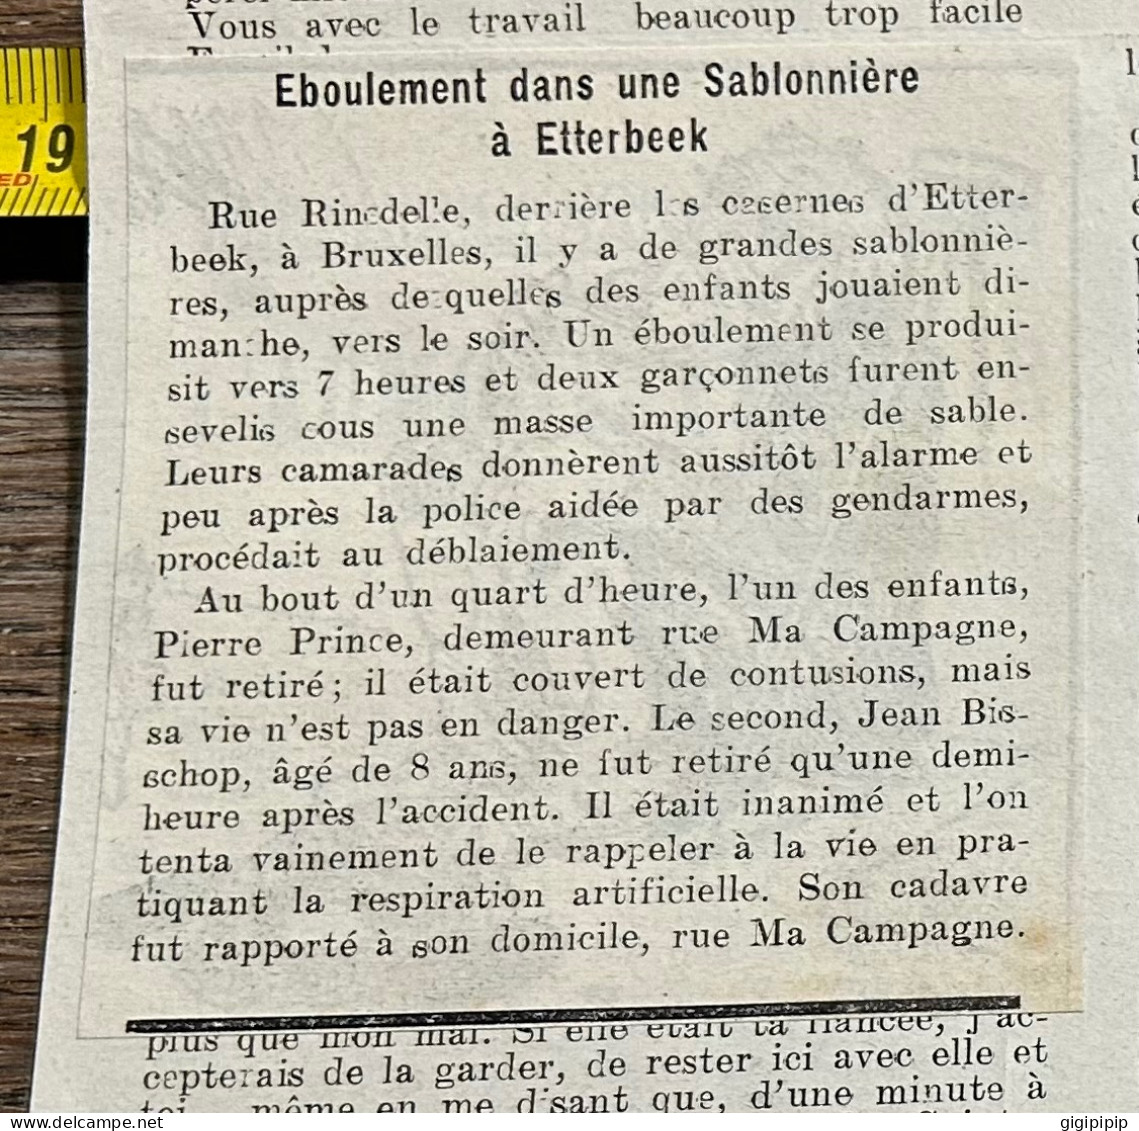 1908 PATI ÉBOULEMENT AUX SABLONNIÈRES D'ETTERBEEK. -- DEUX ENFANTS ENSEVELIS Pierre Prince Jean Bisschop, - Colecciones